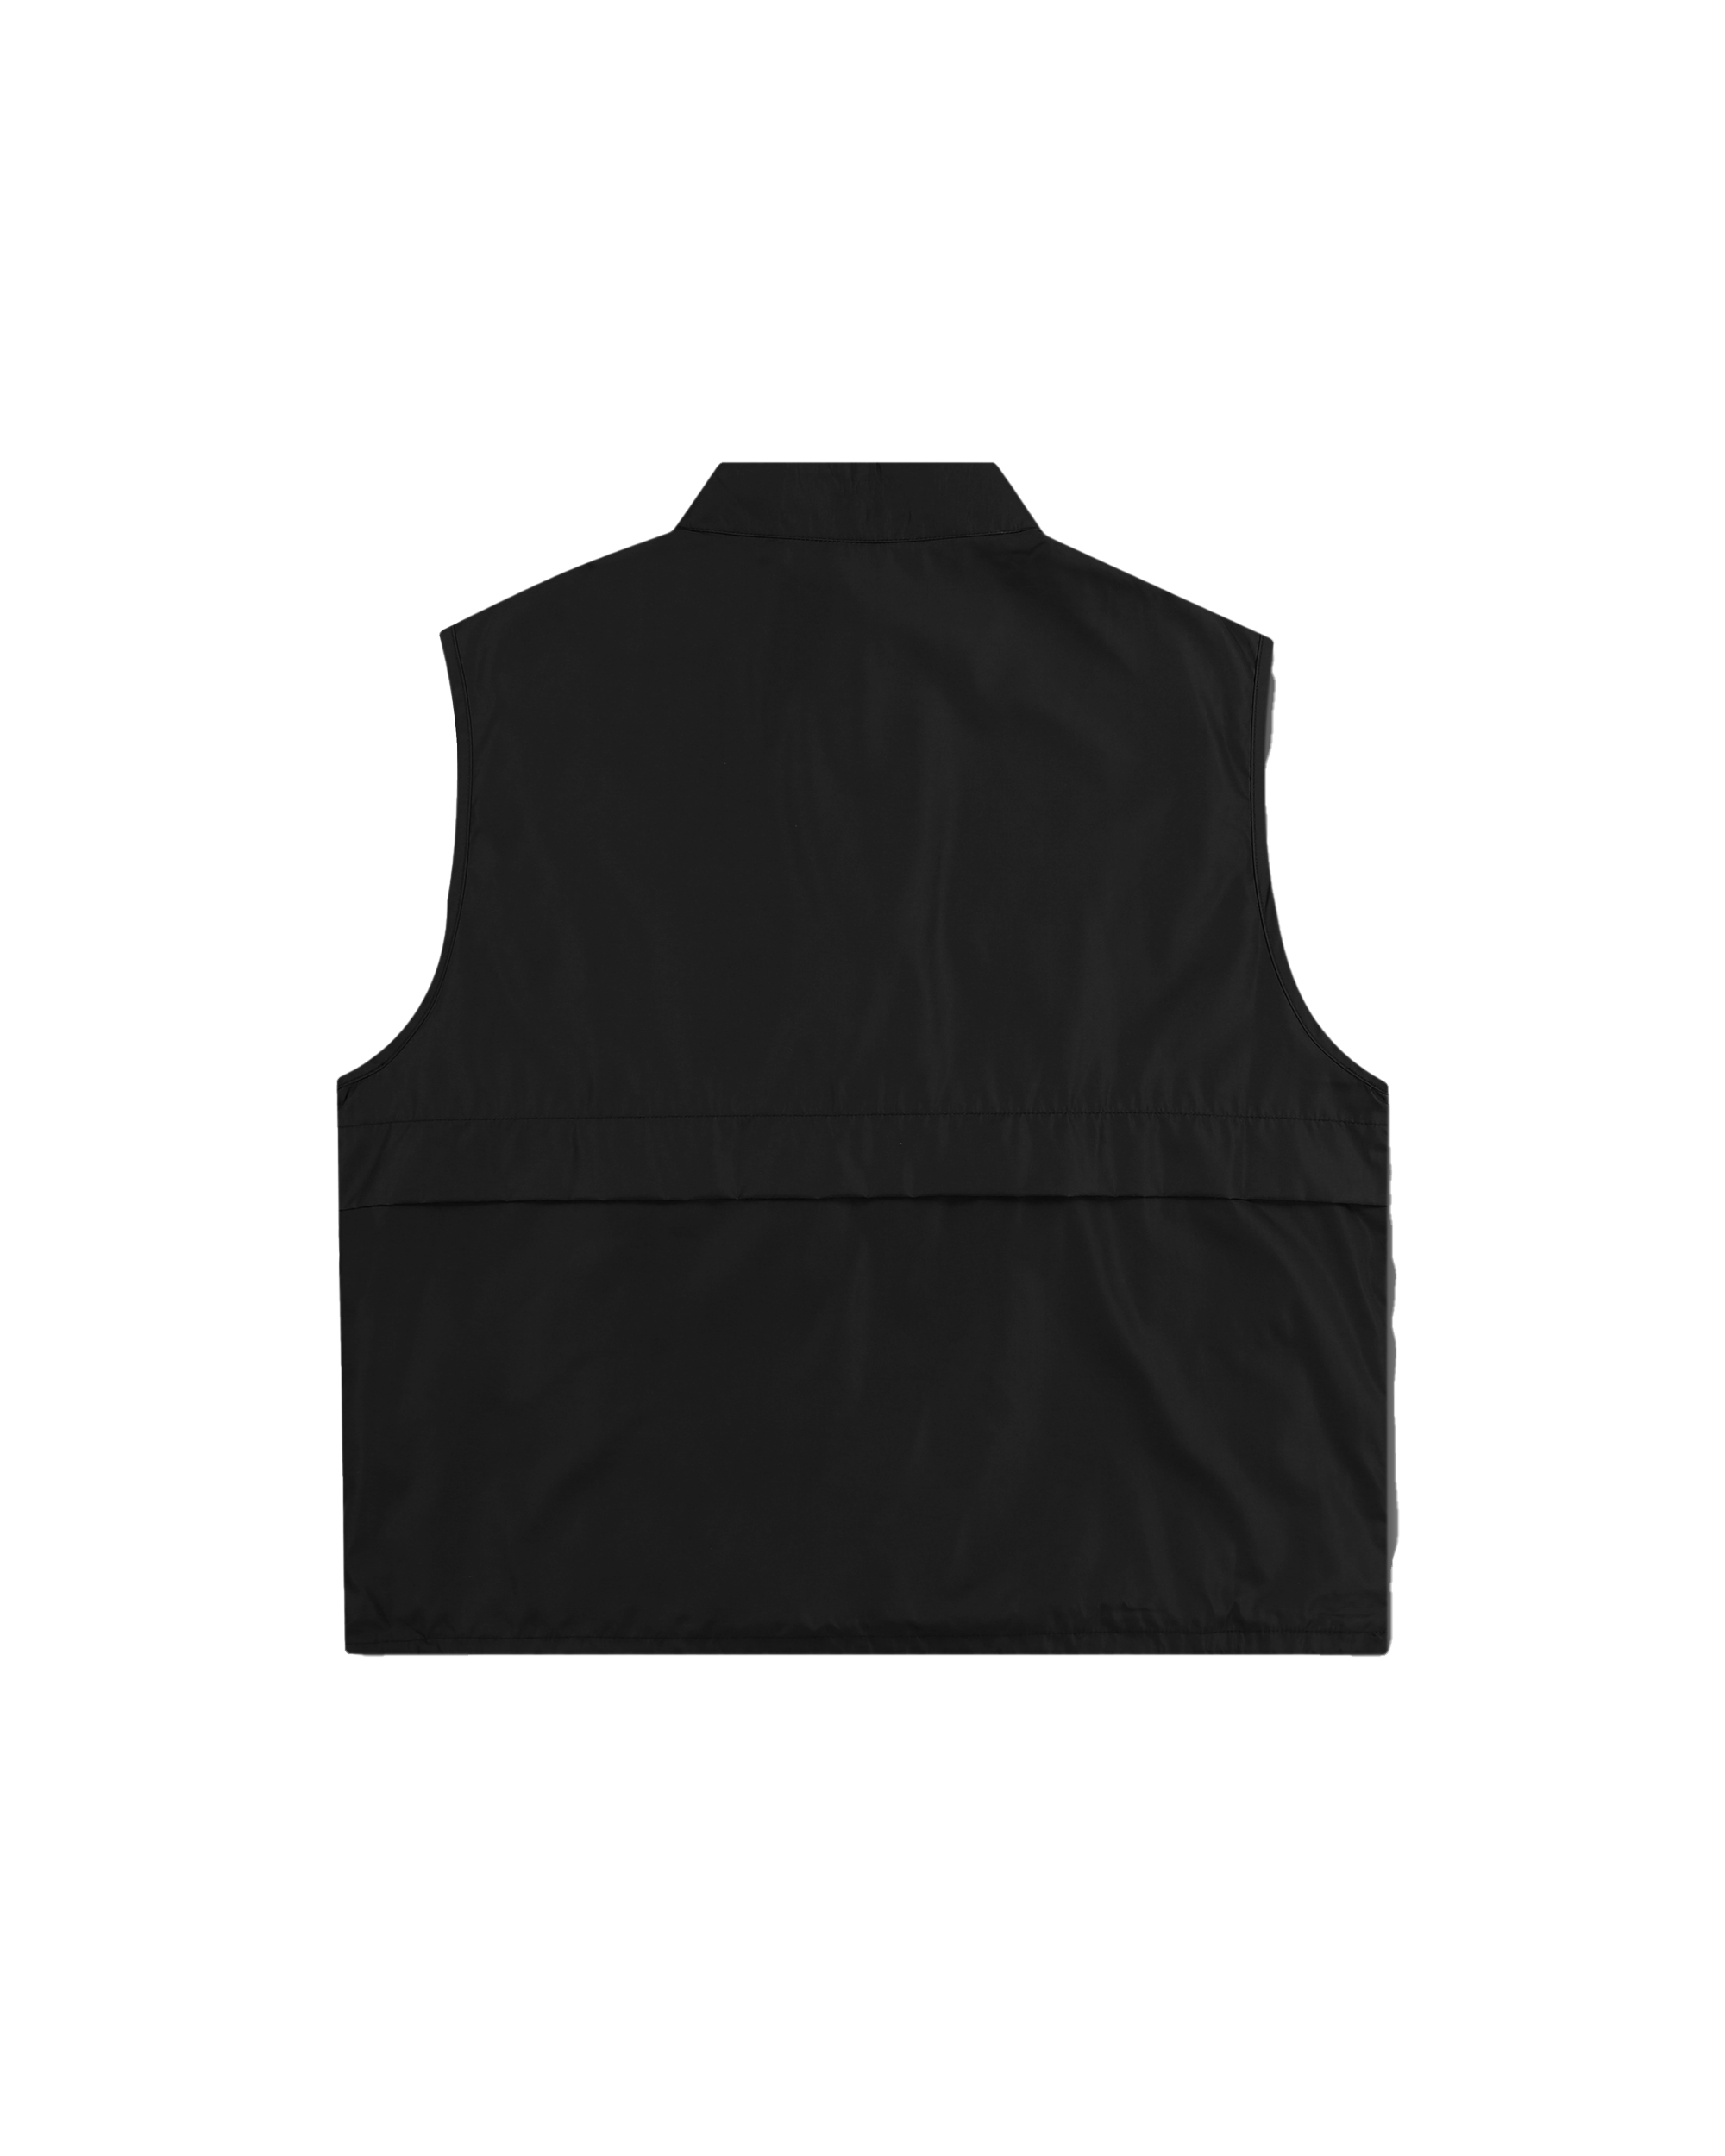 Disguise Vest – Black